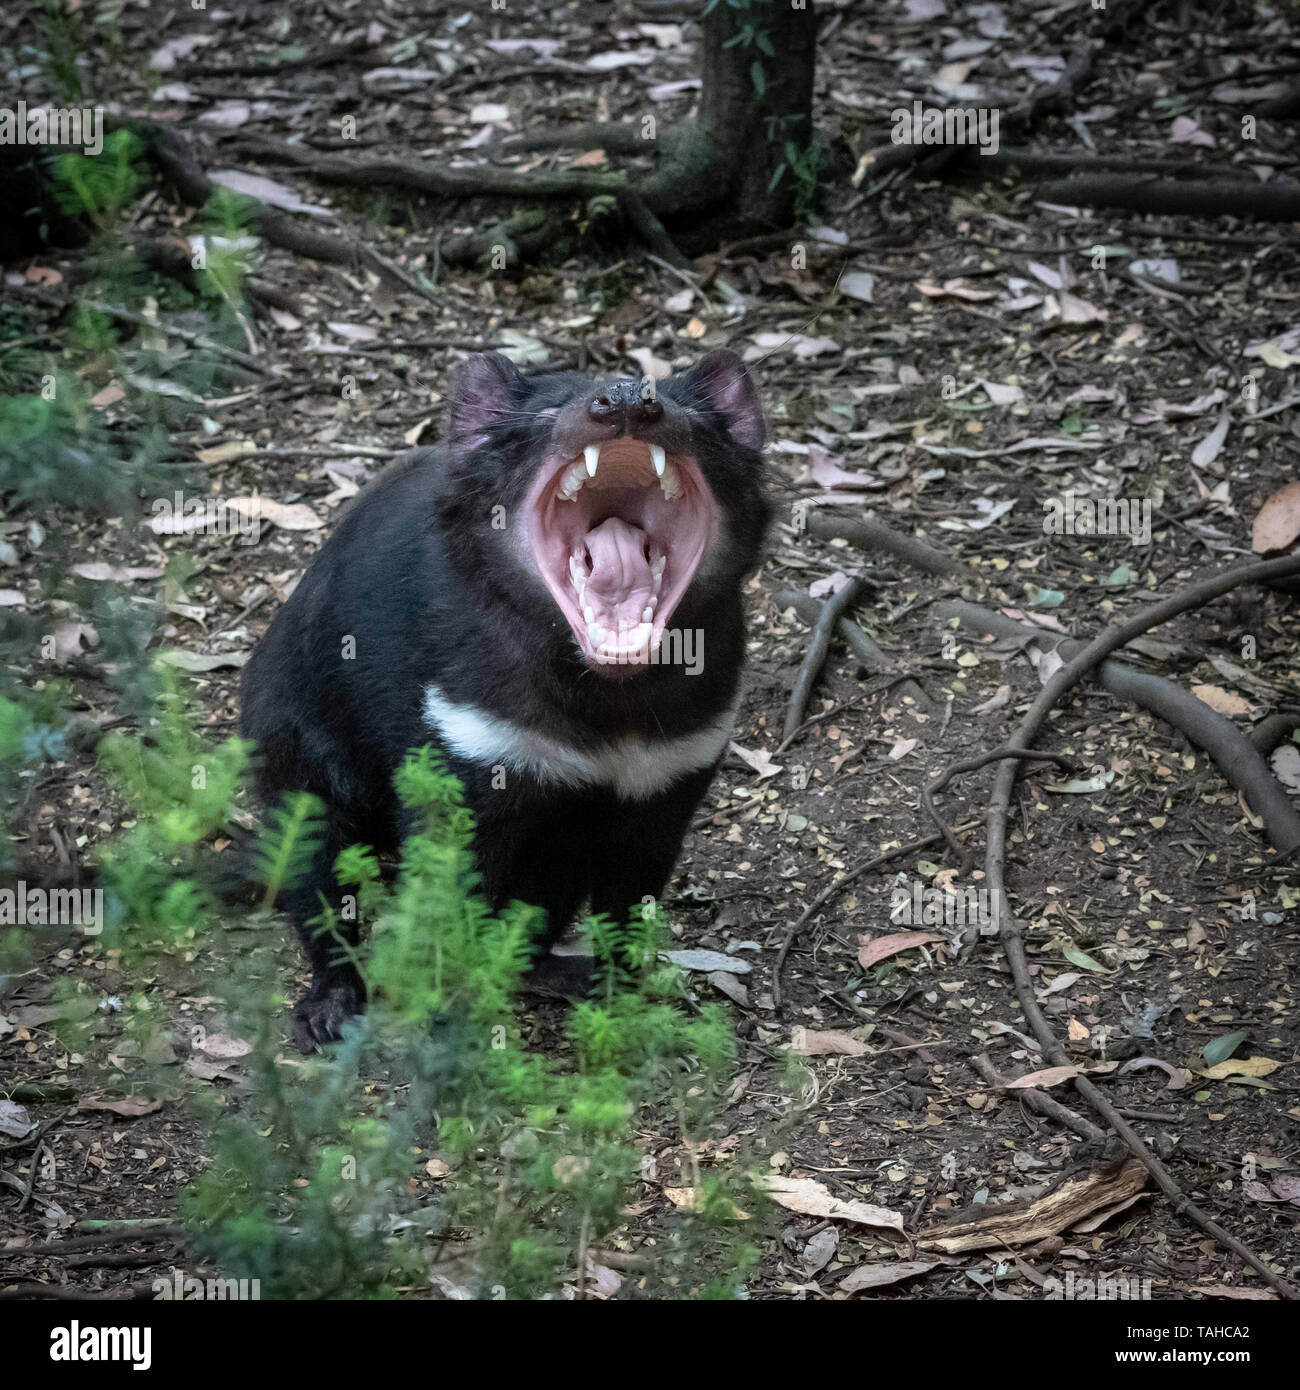 Tasmanian Devil at Cradle Mountain, Tasmania, Australia Stock Photo